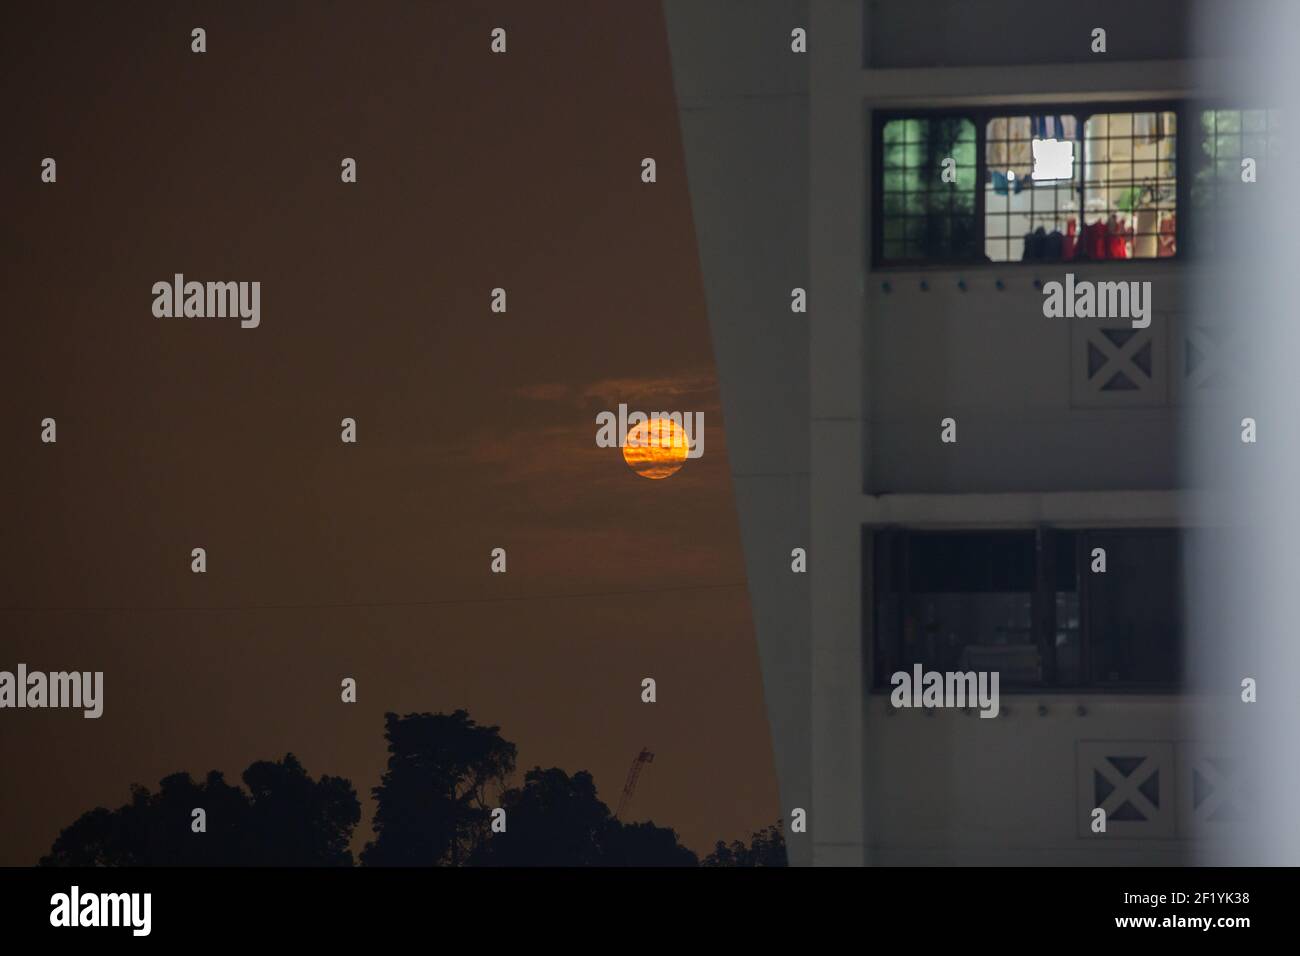 Énorme lune orange tinge soulevée de l'horizon, la lune était à côté d'un bloc de logement de haute élévation, le 1er mars 2021. Singapour. Banque D'Images